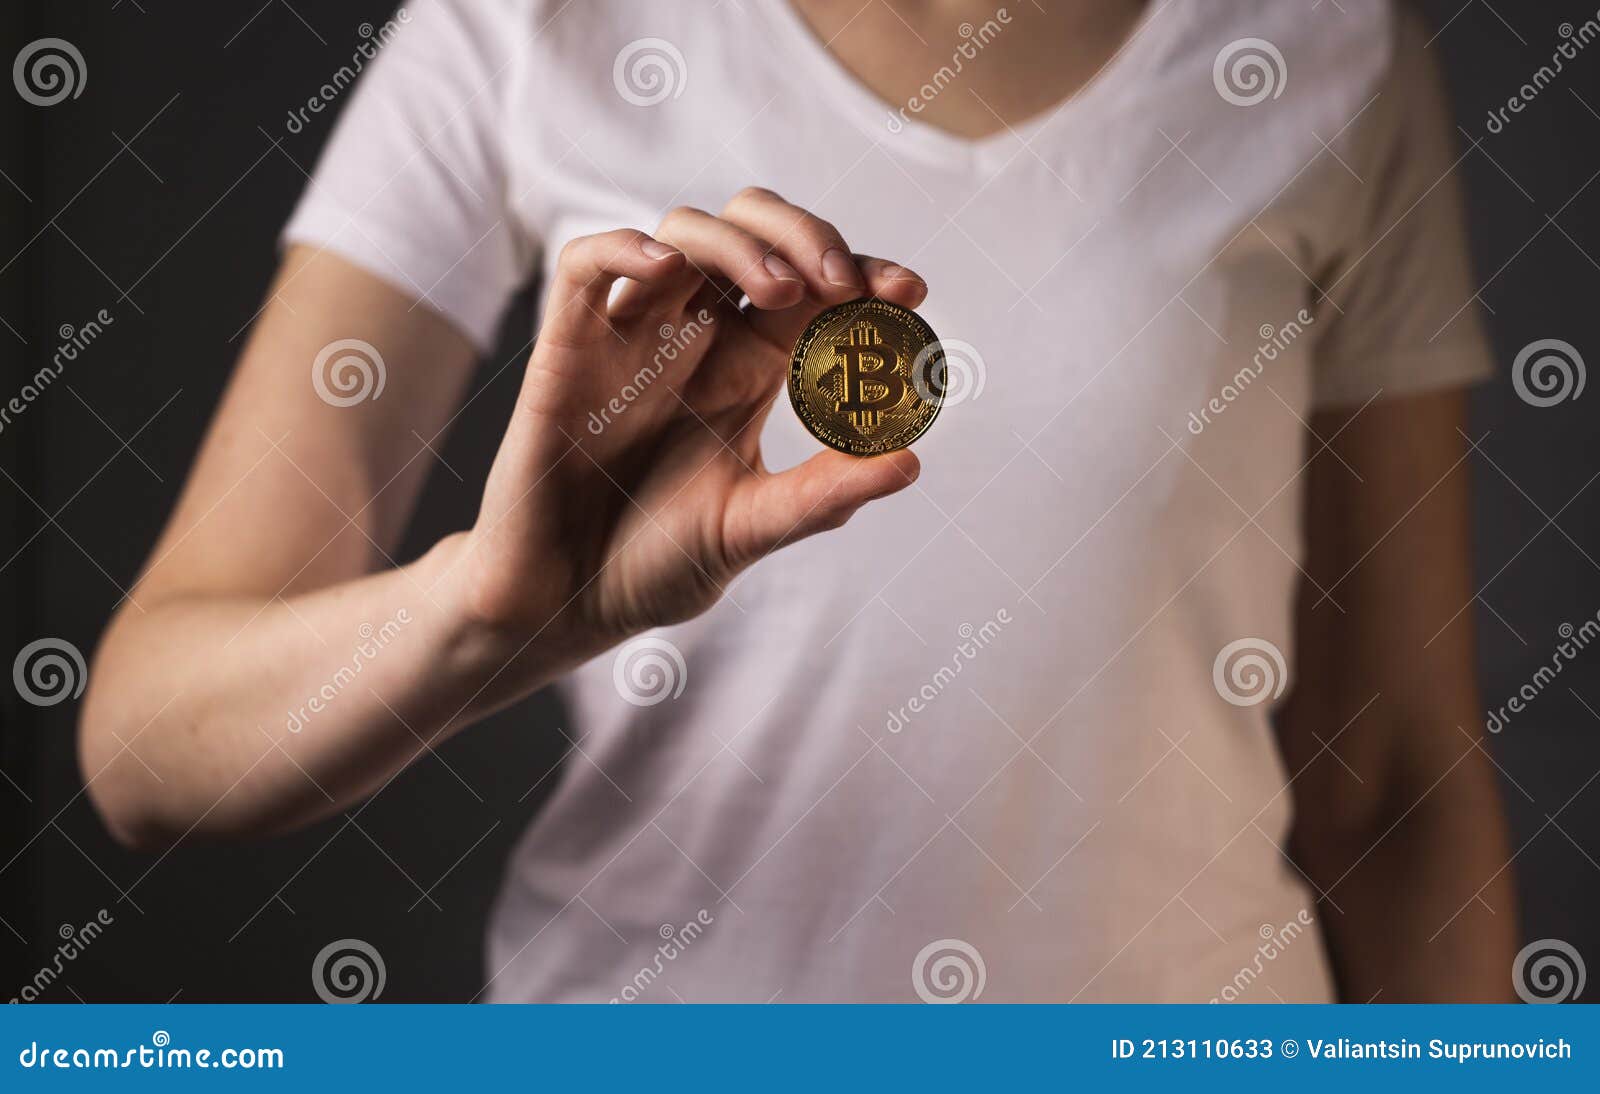 bitcoin bu